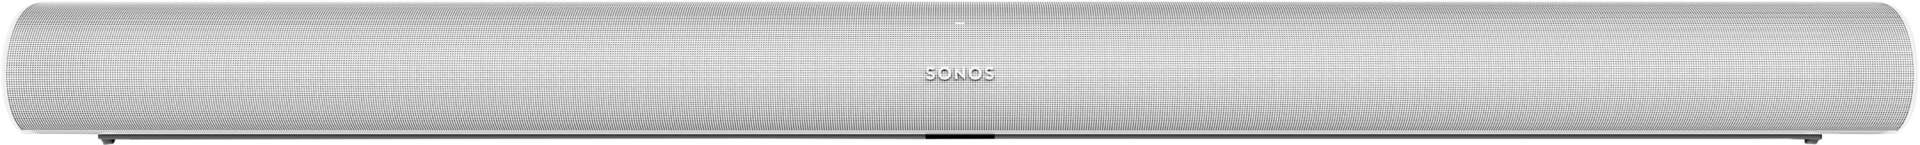 Sonos arc 3.8.3 hangprojektor - fehér